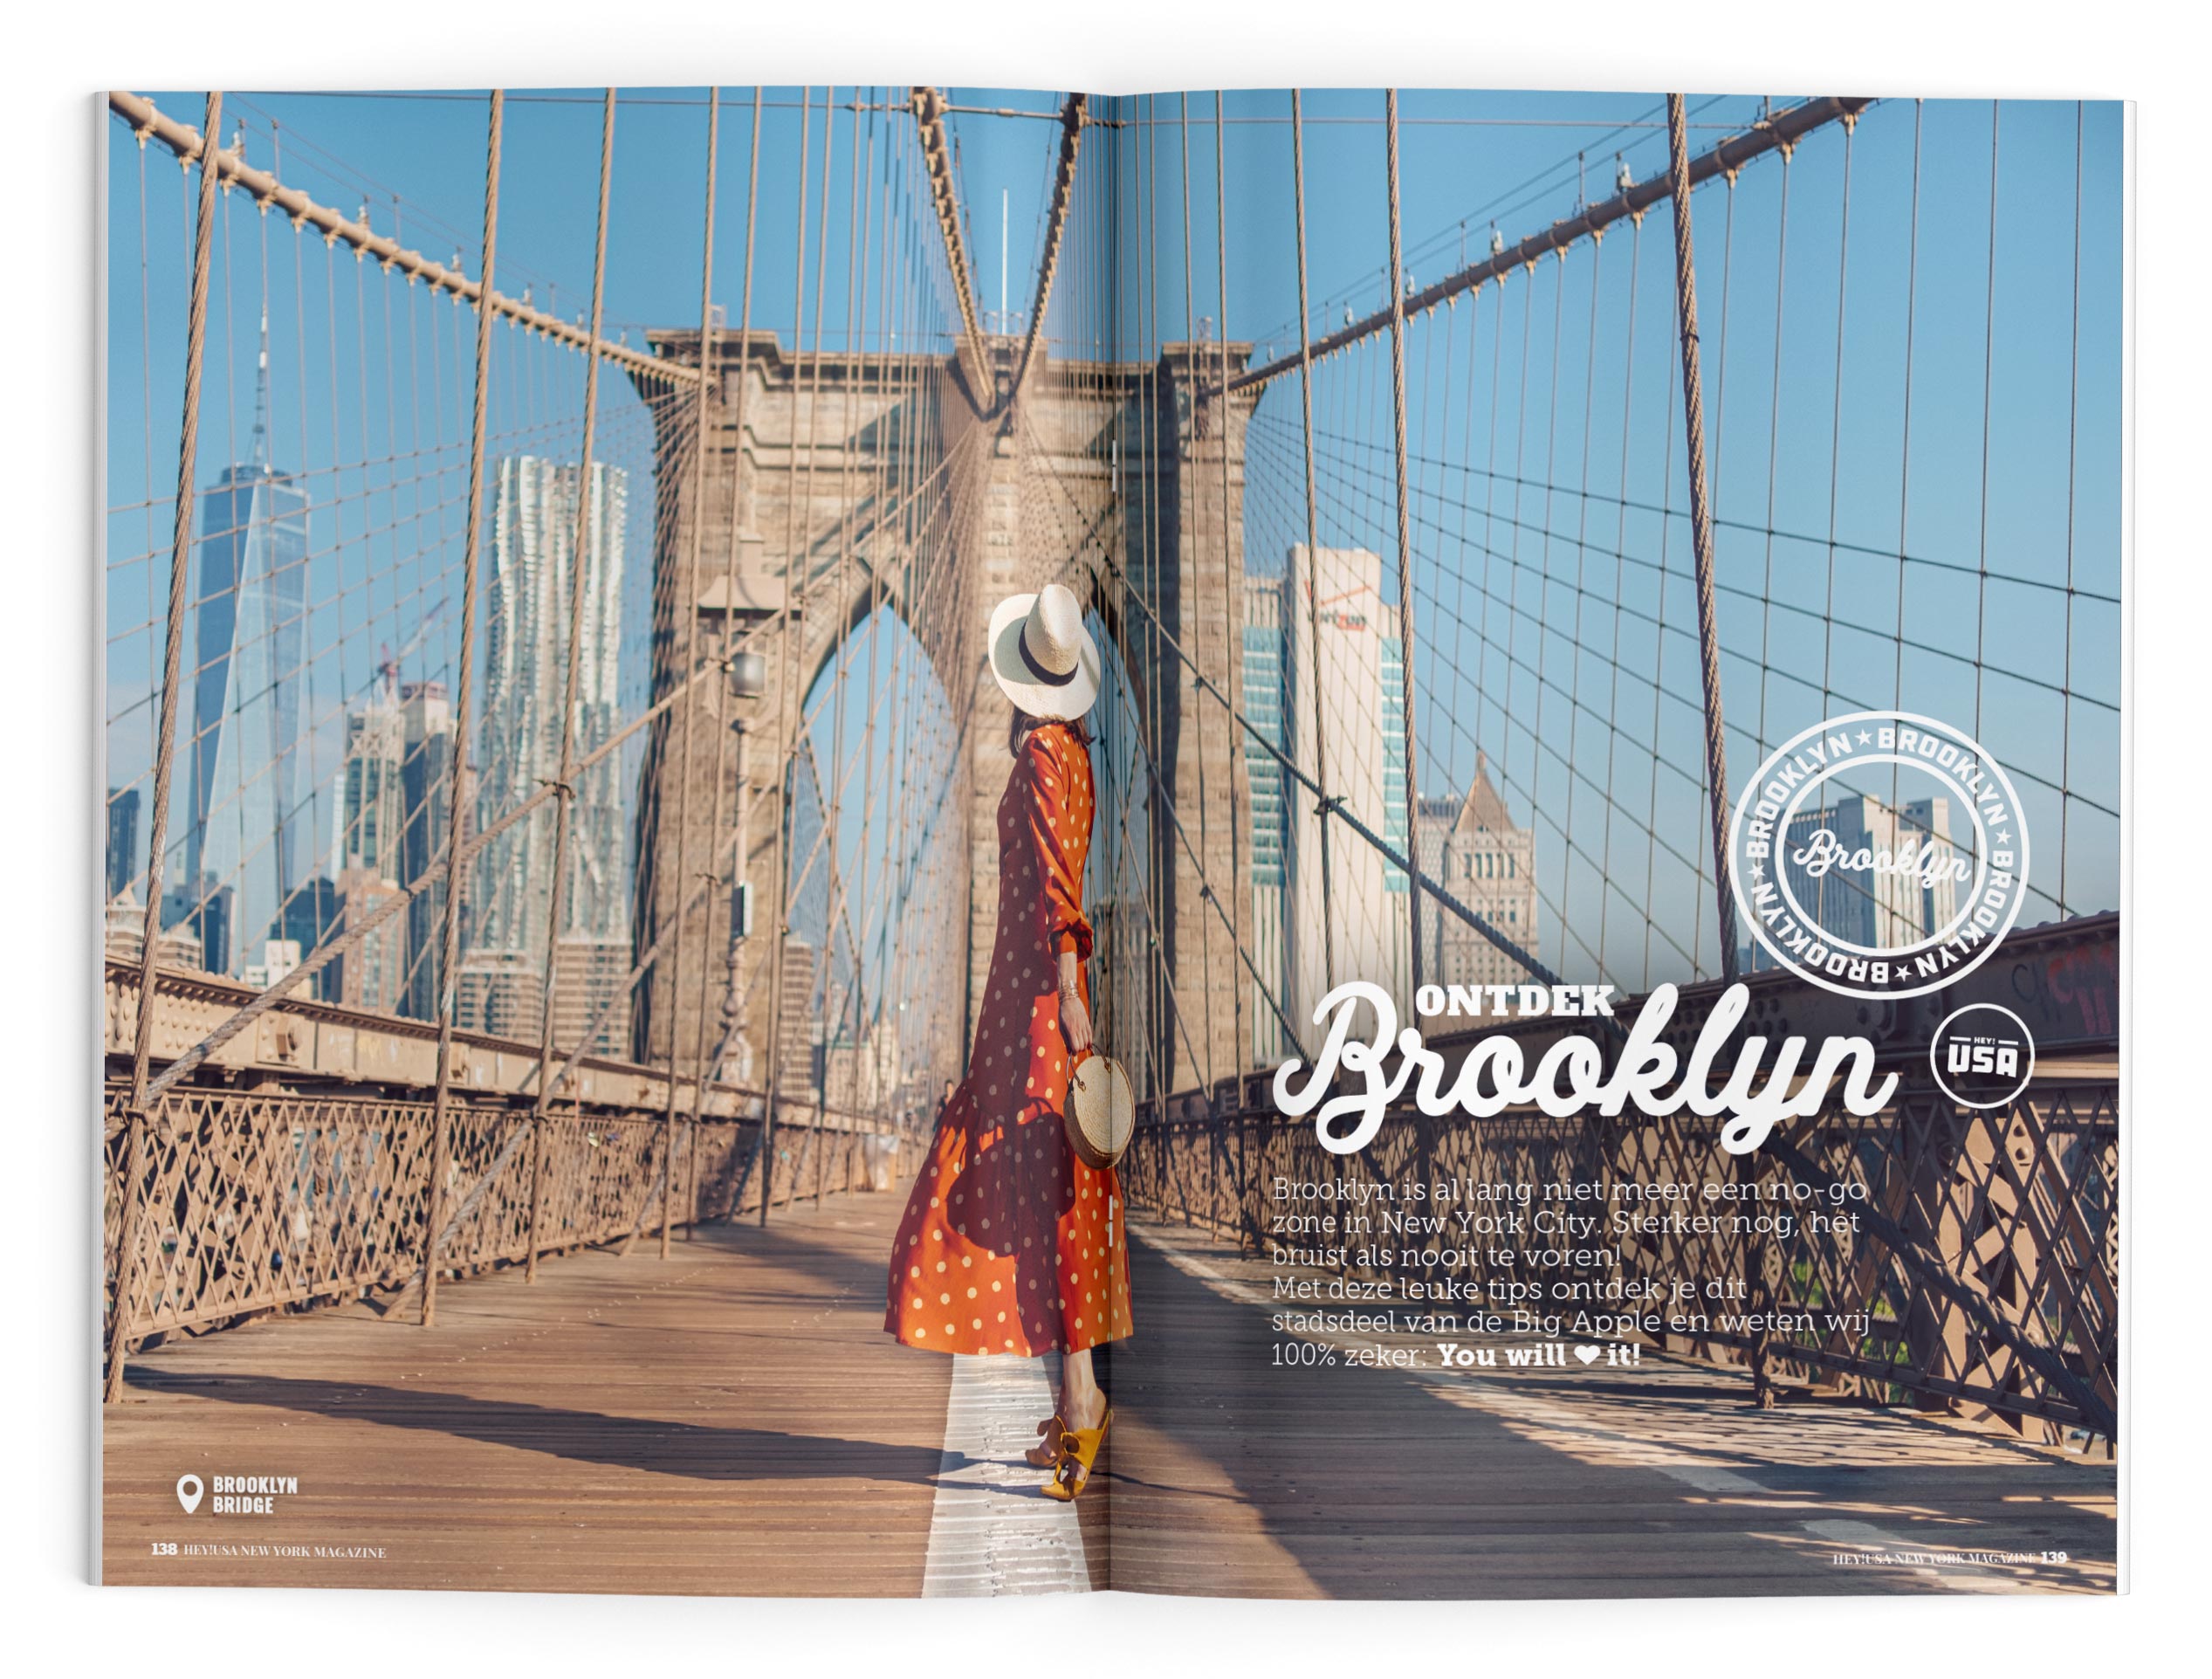 Ontdek het bruisende stadsdeel Brooklyn in het New York magazine van Hey!USA